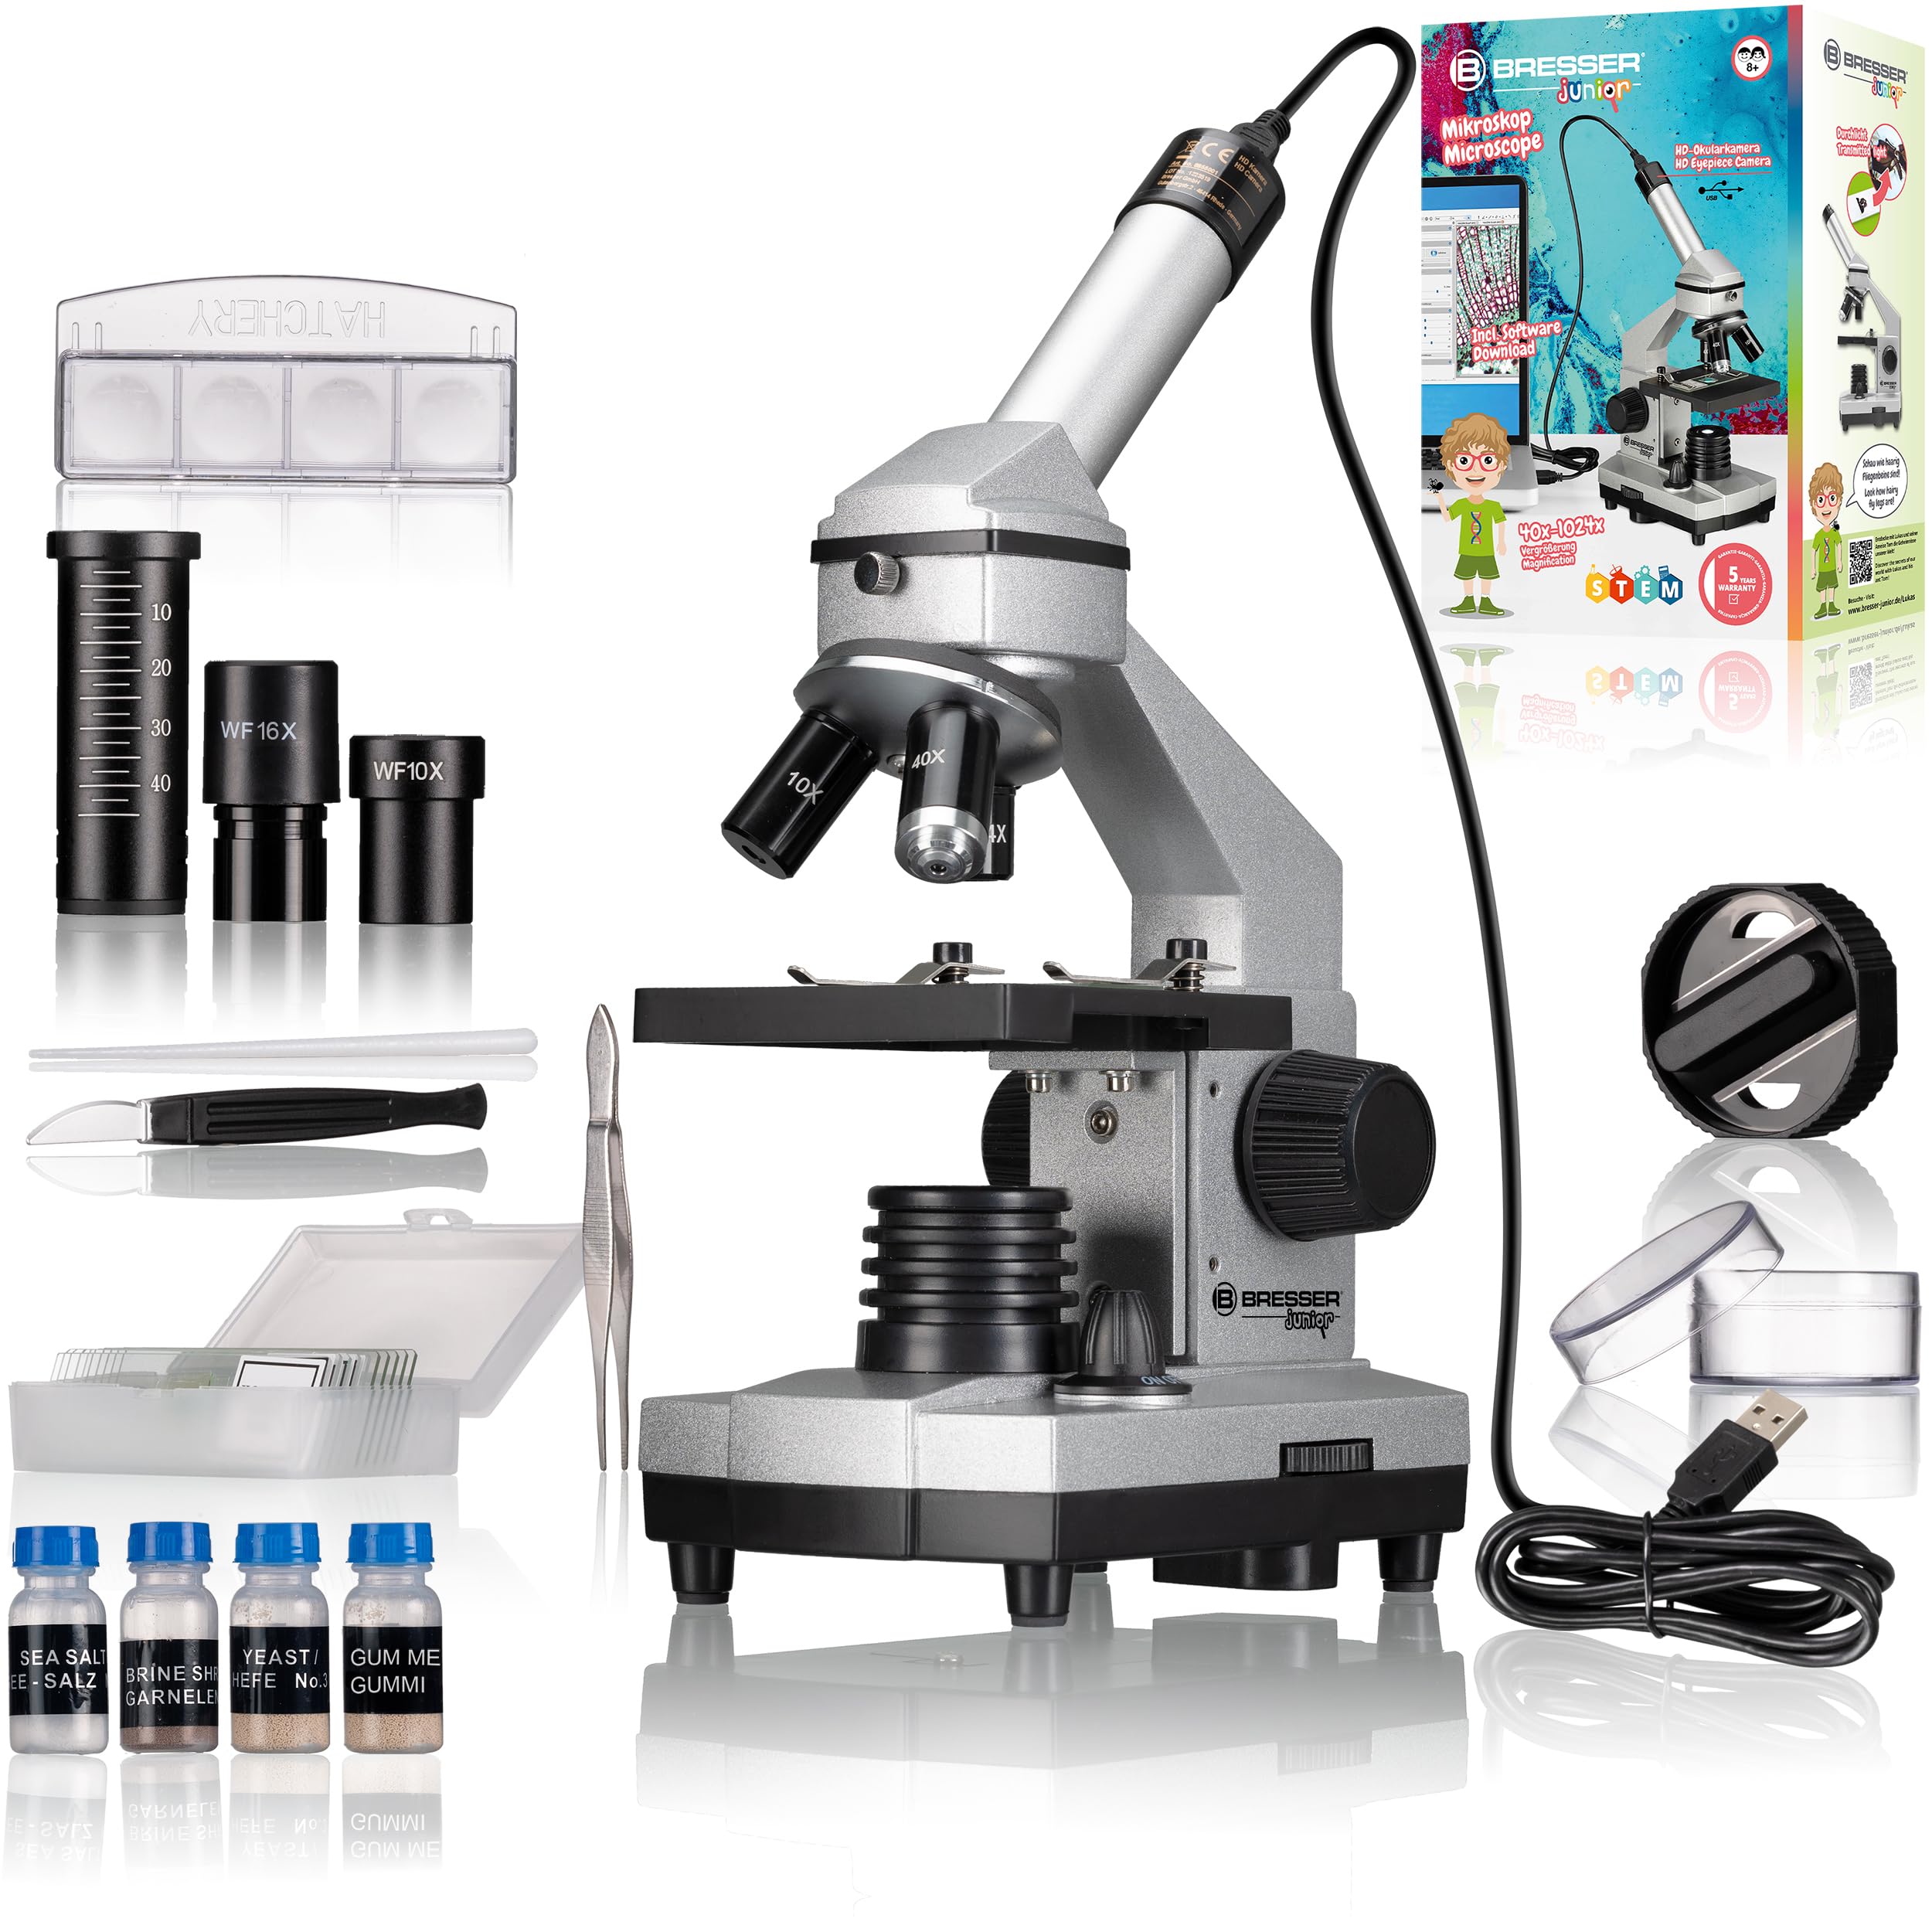 Bresser Junior Mikroskop Set Biolux DE 40x-1024x für Kinder und Erwachsene mit hoher Vergrößerung, inklusive USB Kamera und umfangreichem Zubehör für den idealen Start in den Mikrokosmos